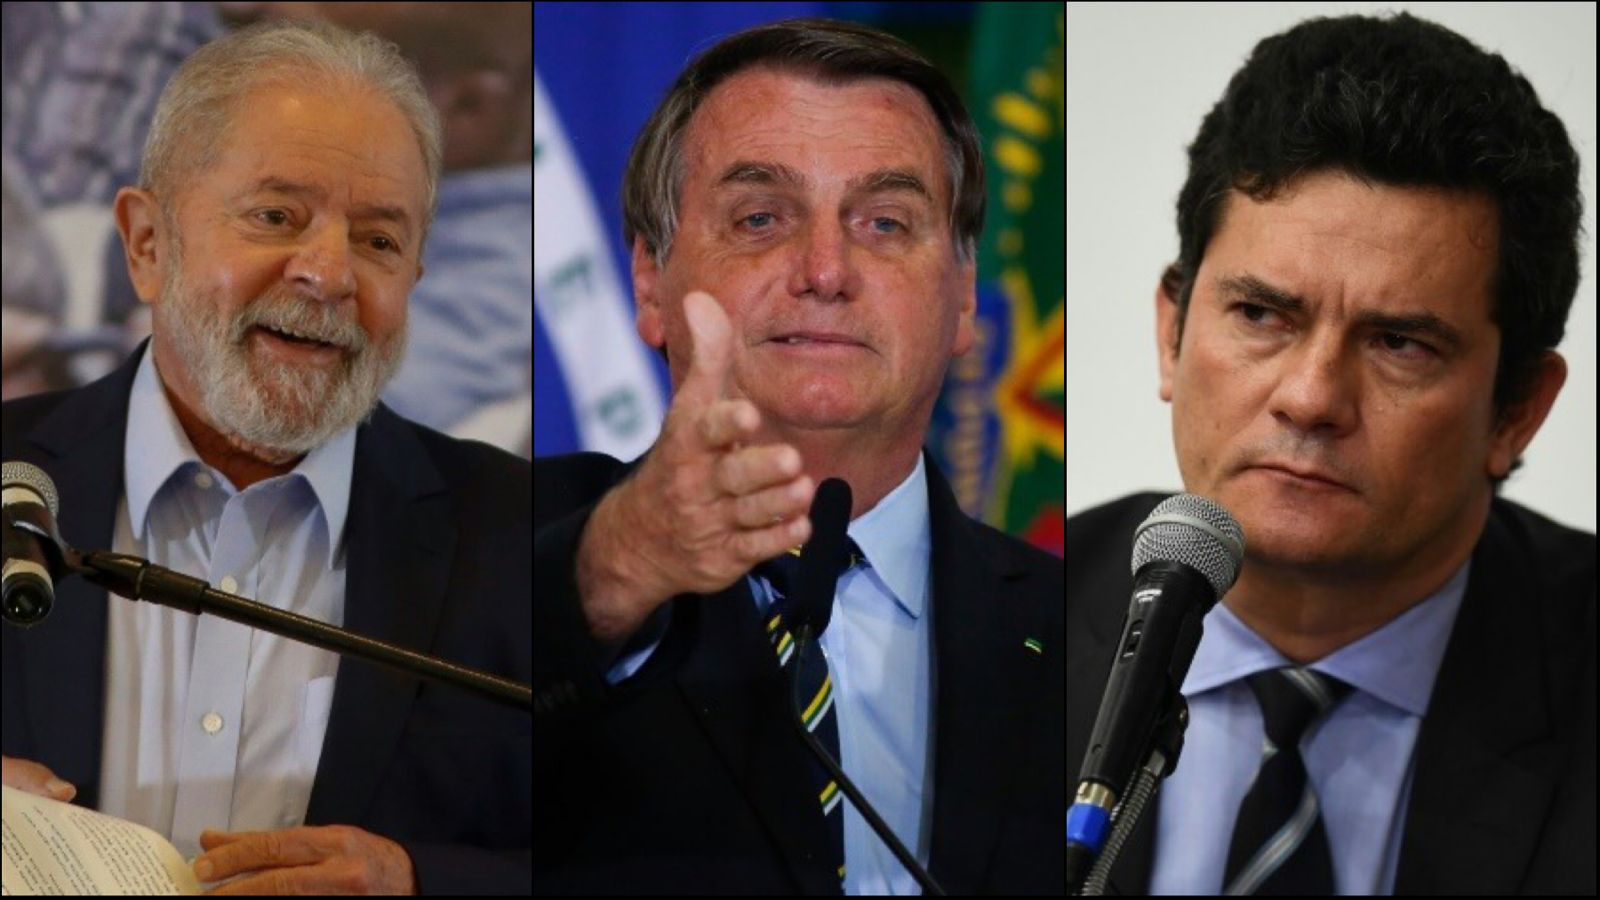 O Brasil merece: Lula é honestíssimo, Bolsonaro é honesto e Moro, nem tanto  - ISTOÉ Independente